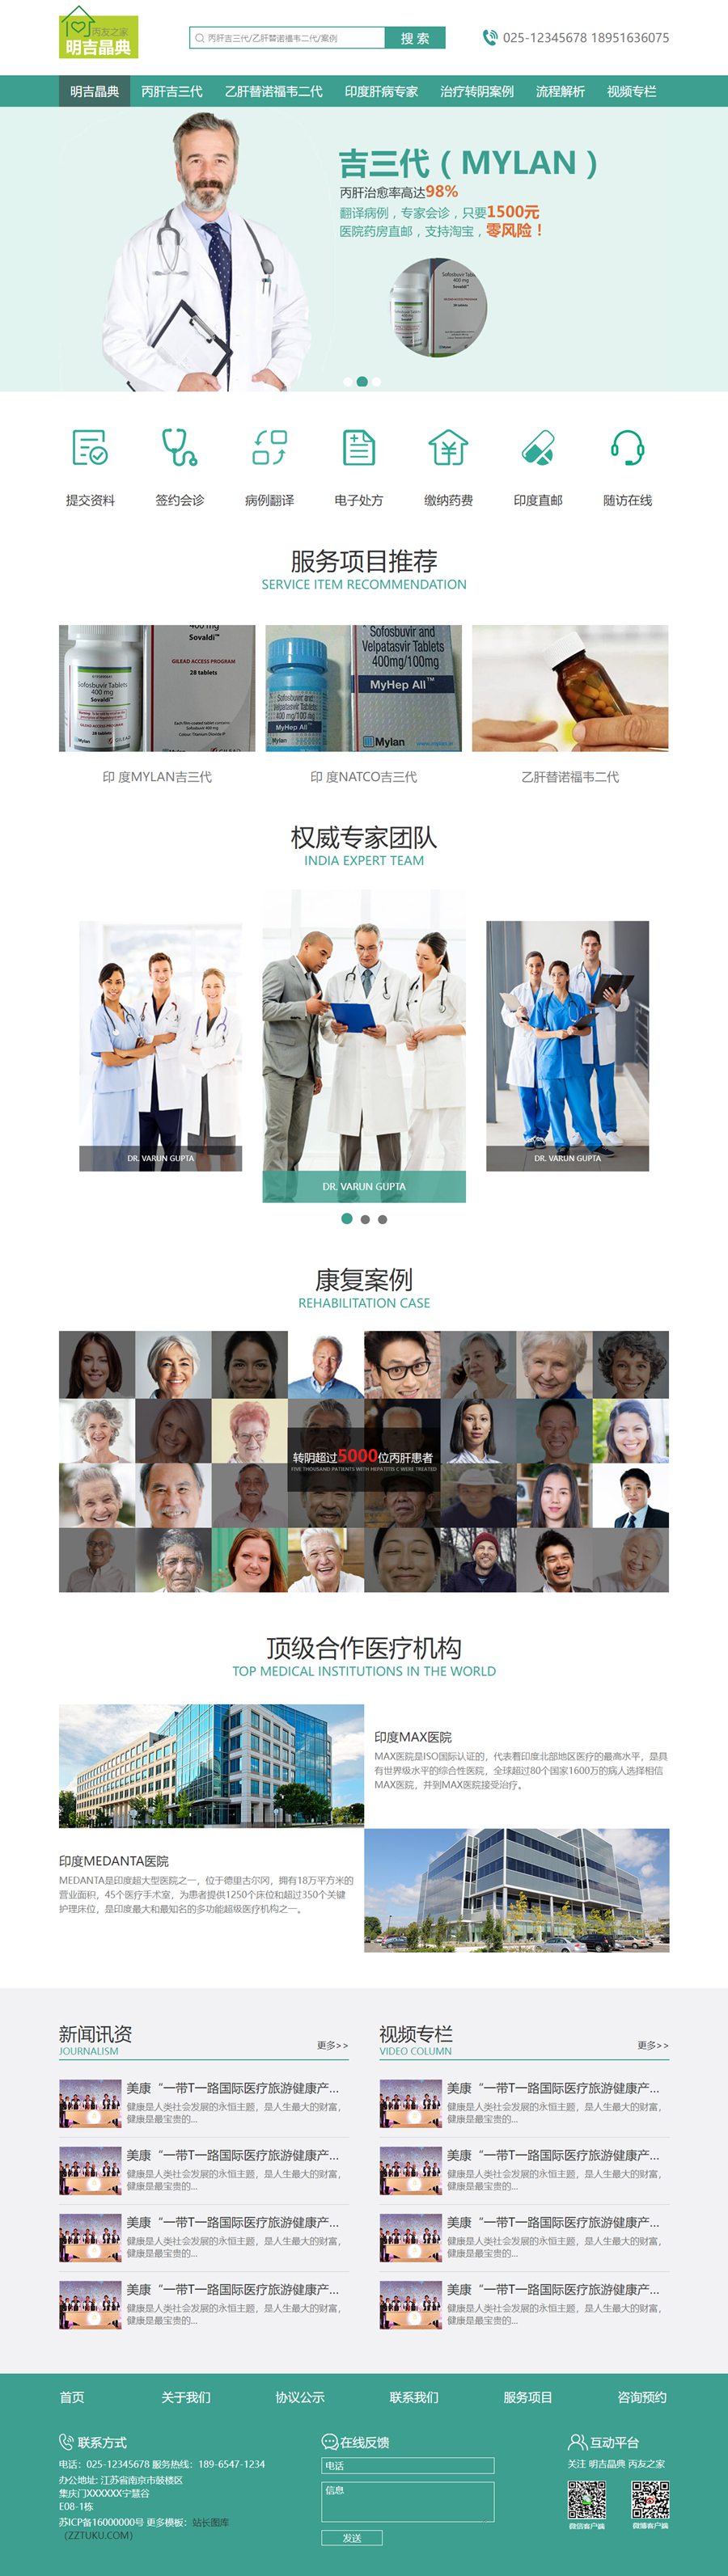 绿色中文医疗机构印度肝病专家HTML静态网页模板